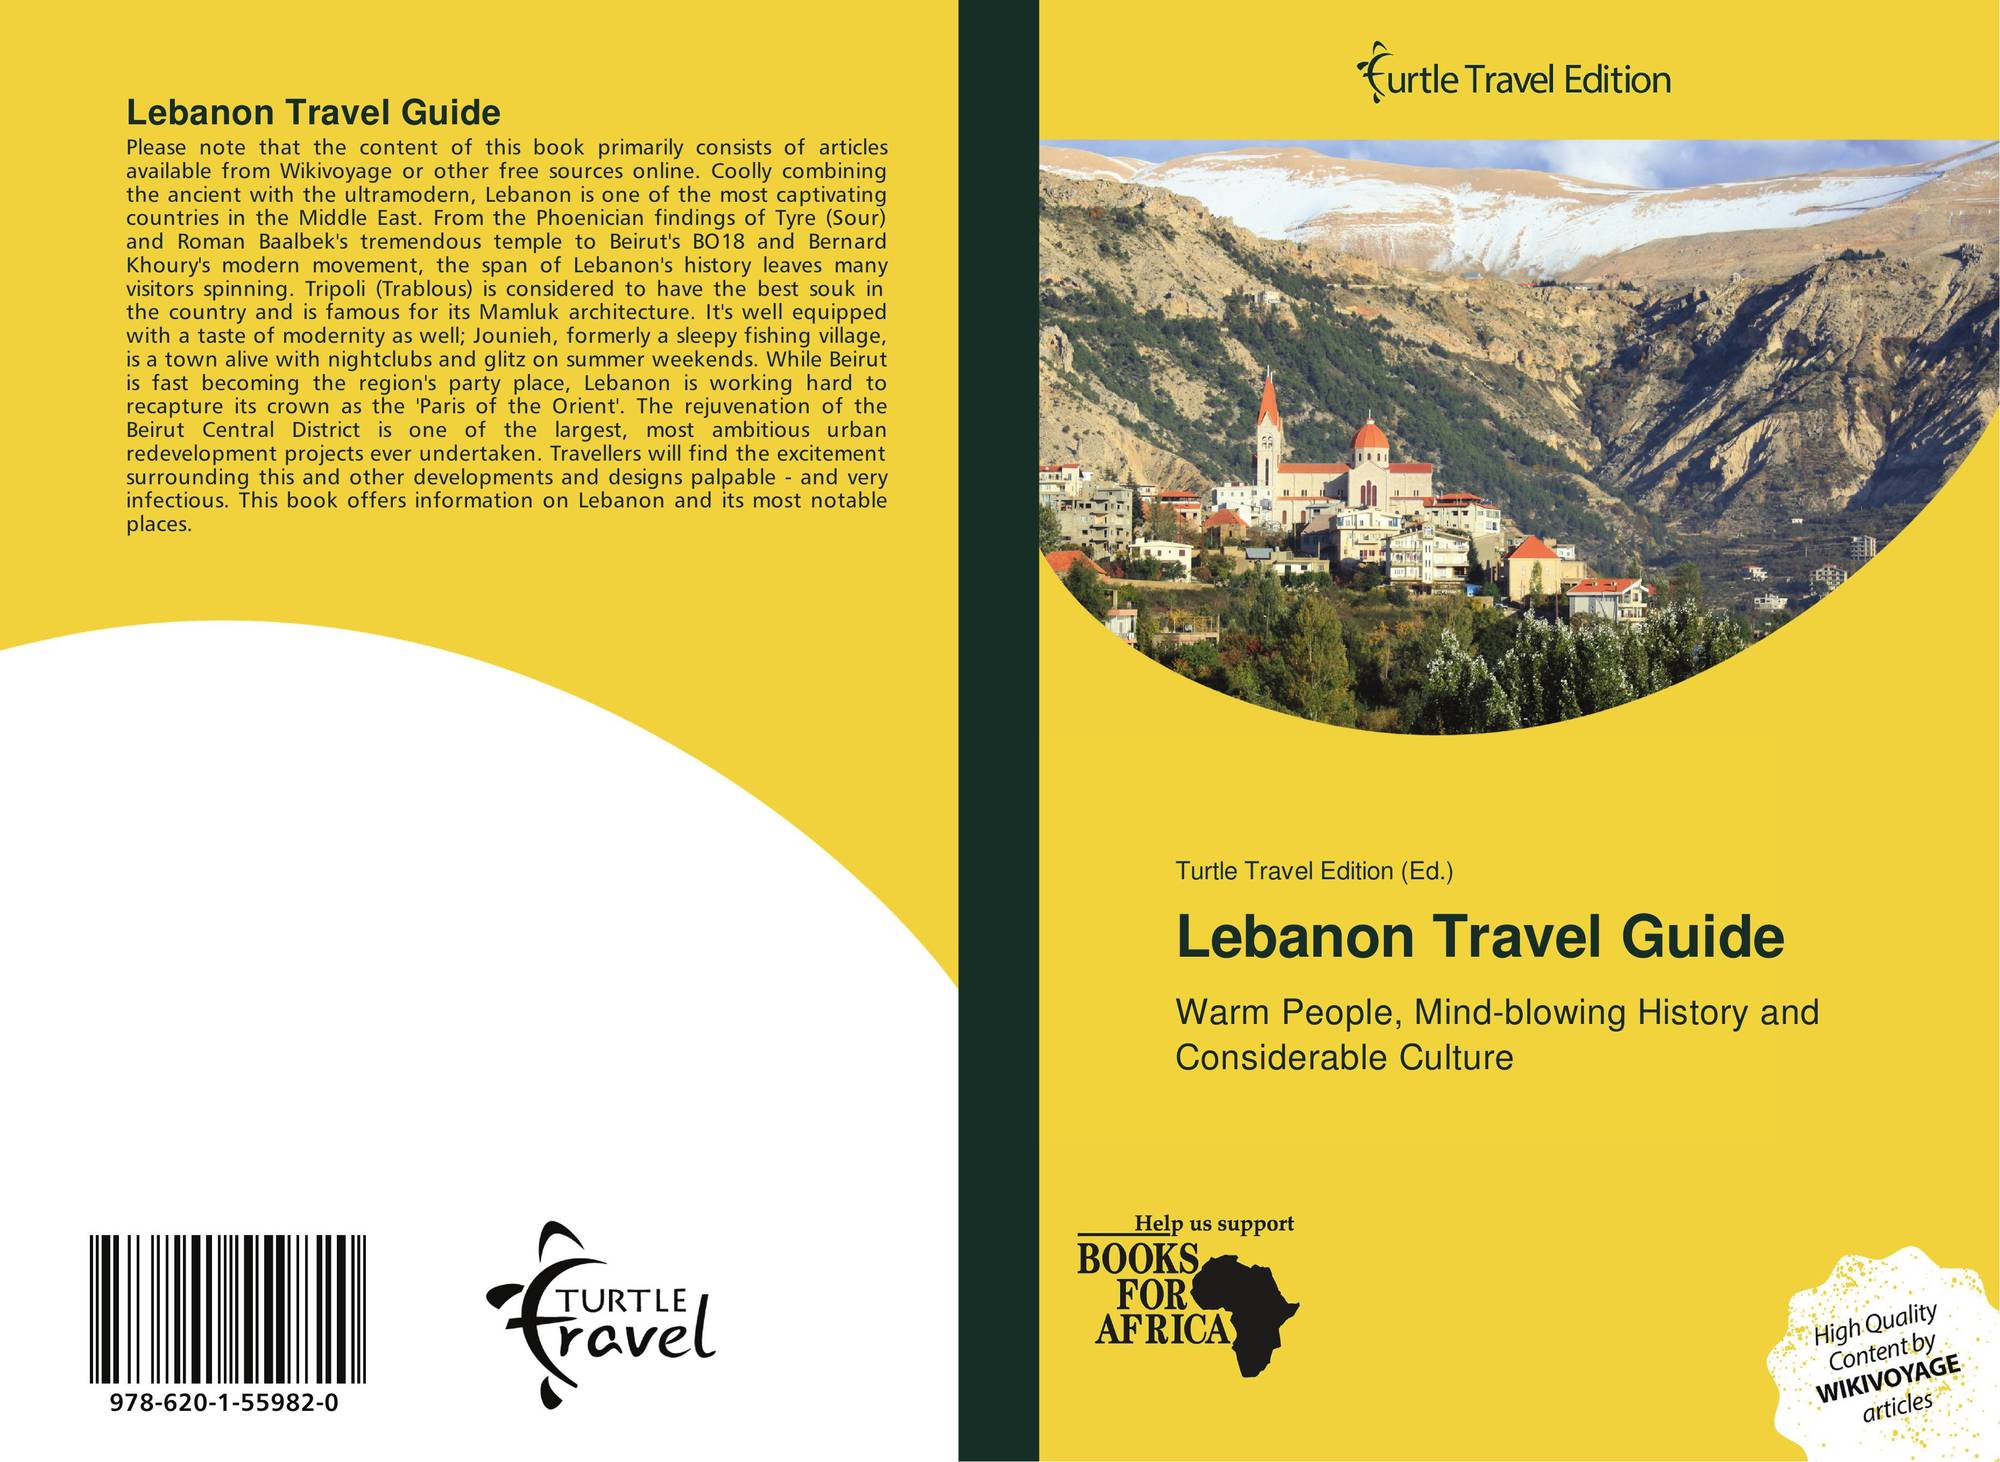 travel book for lebanon